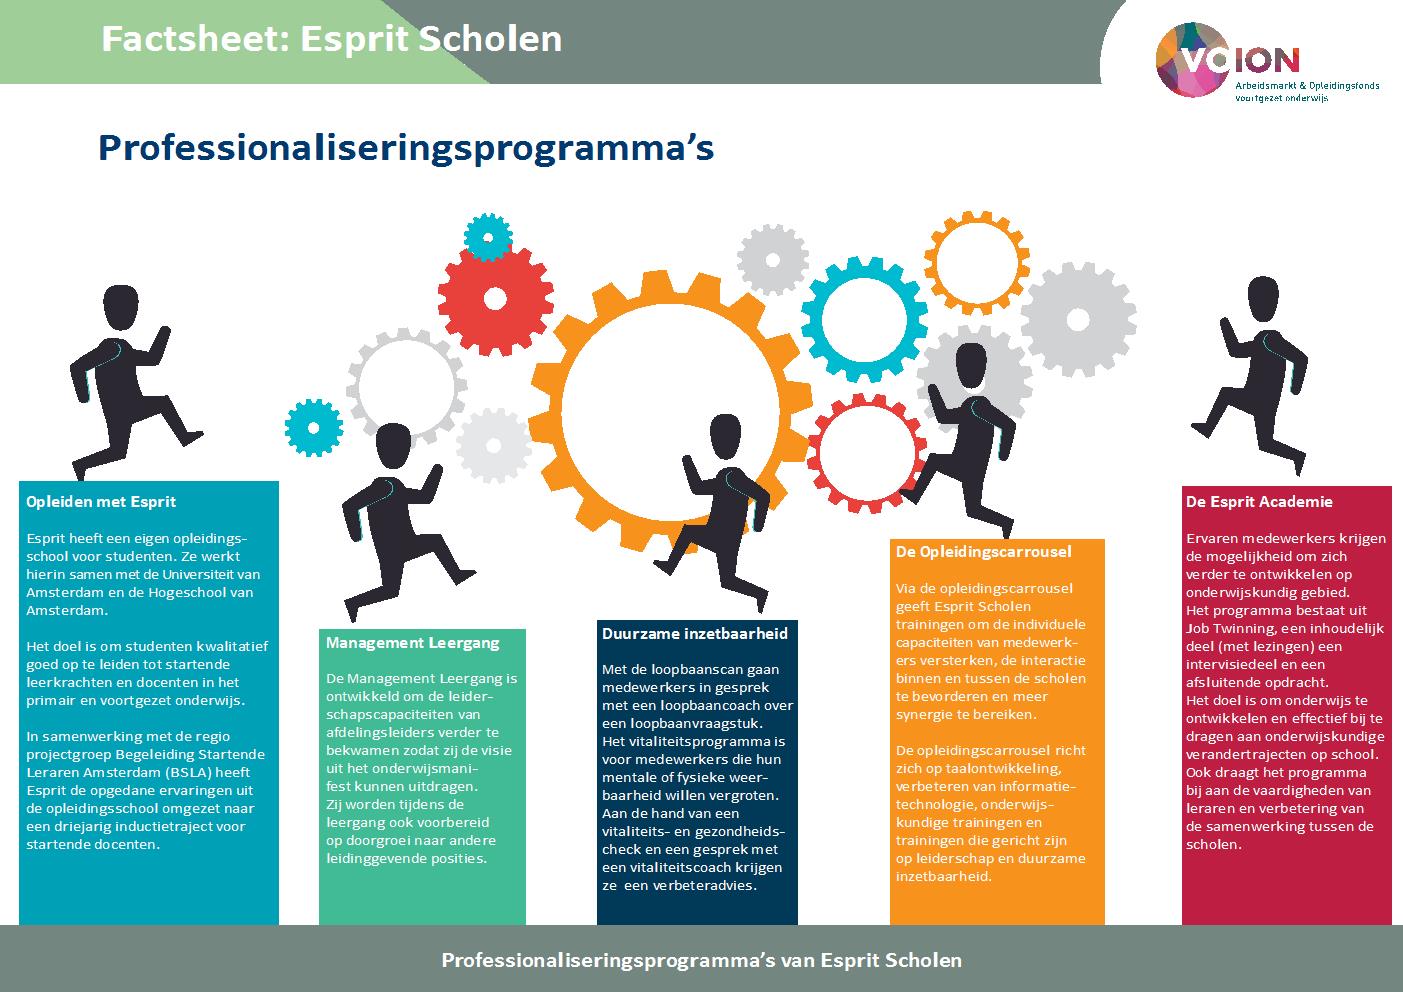 Factsheet Esprit Scholen - Een kijkje in het professionaliseringsprogramma van Esprit